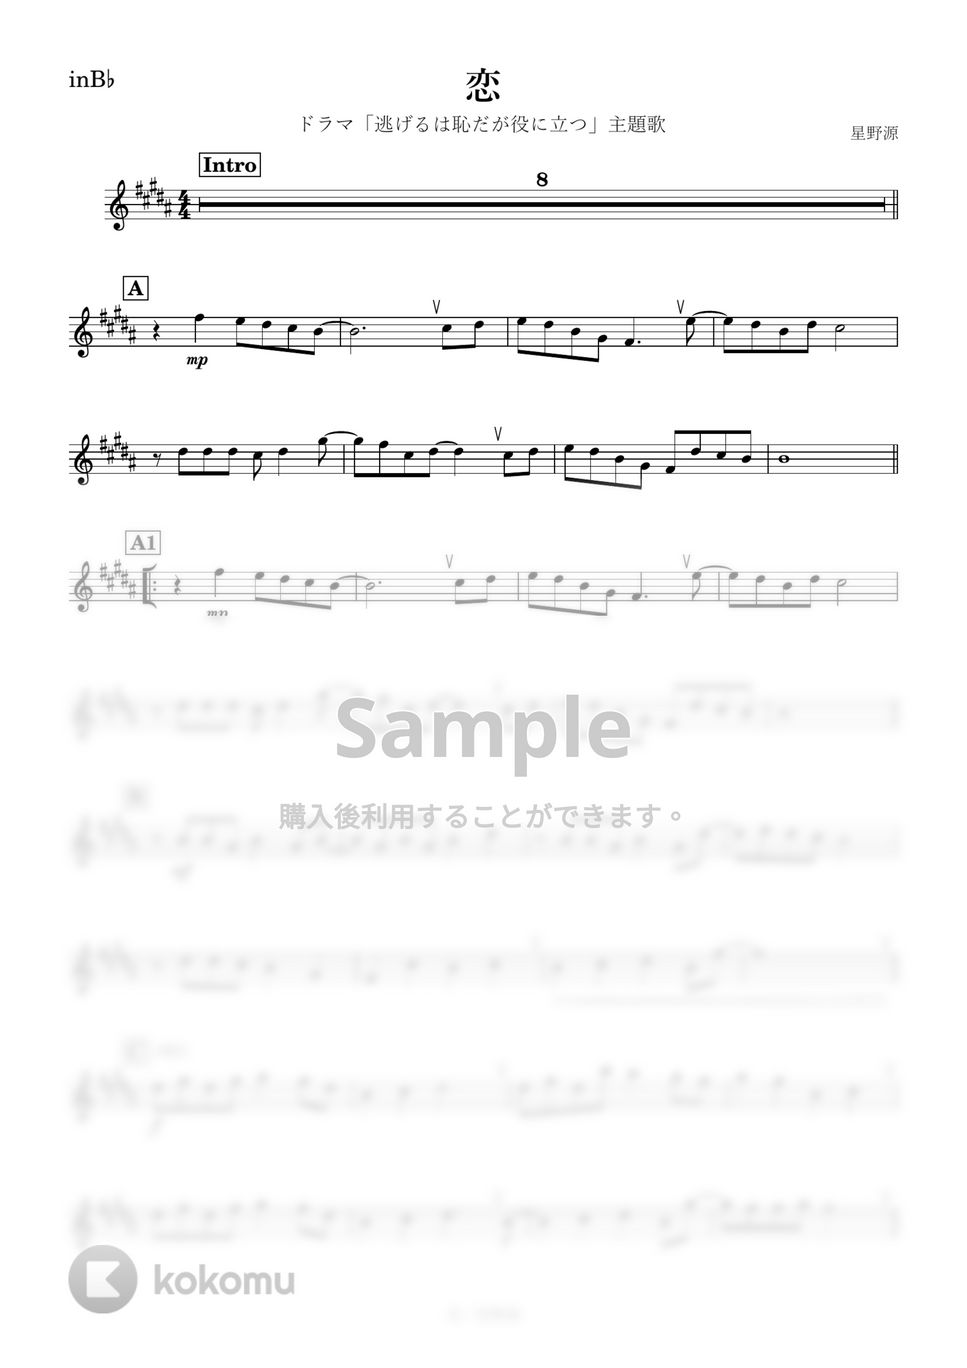 星野源 - 恋 (B♭) by kanamusic